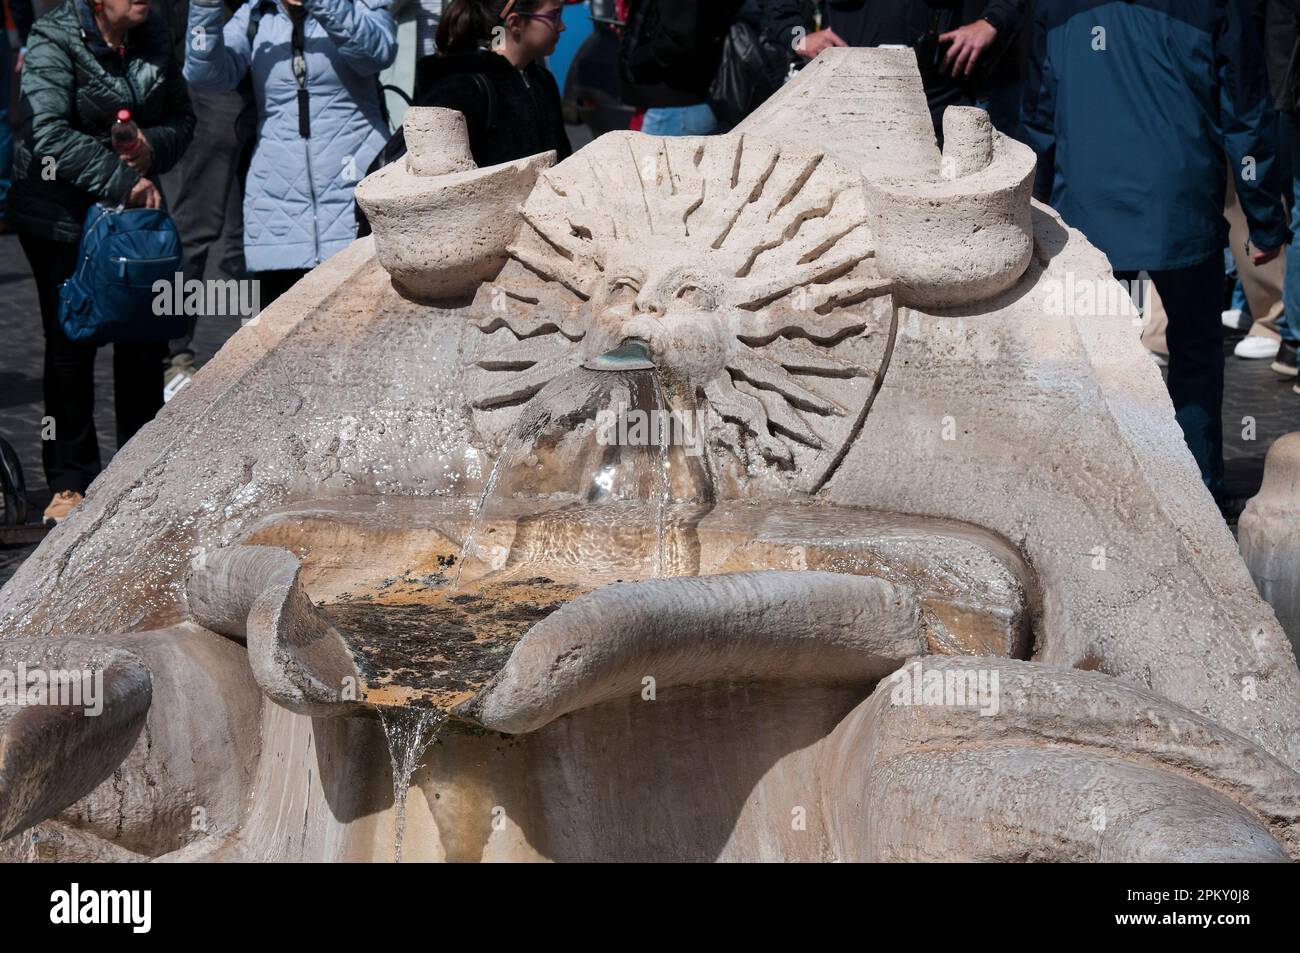 Detail of Fontana della Barcaccia (Barcaccia Fountain) in Piazza di Spagna, Rome, Italy Stock Photo